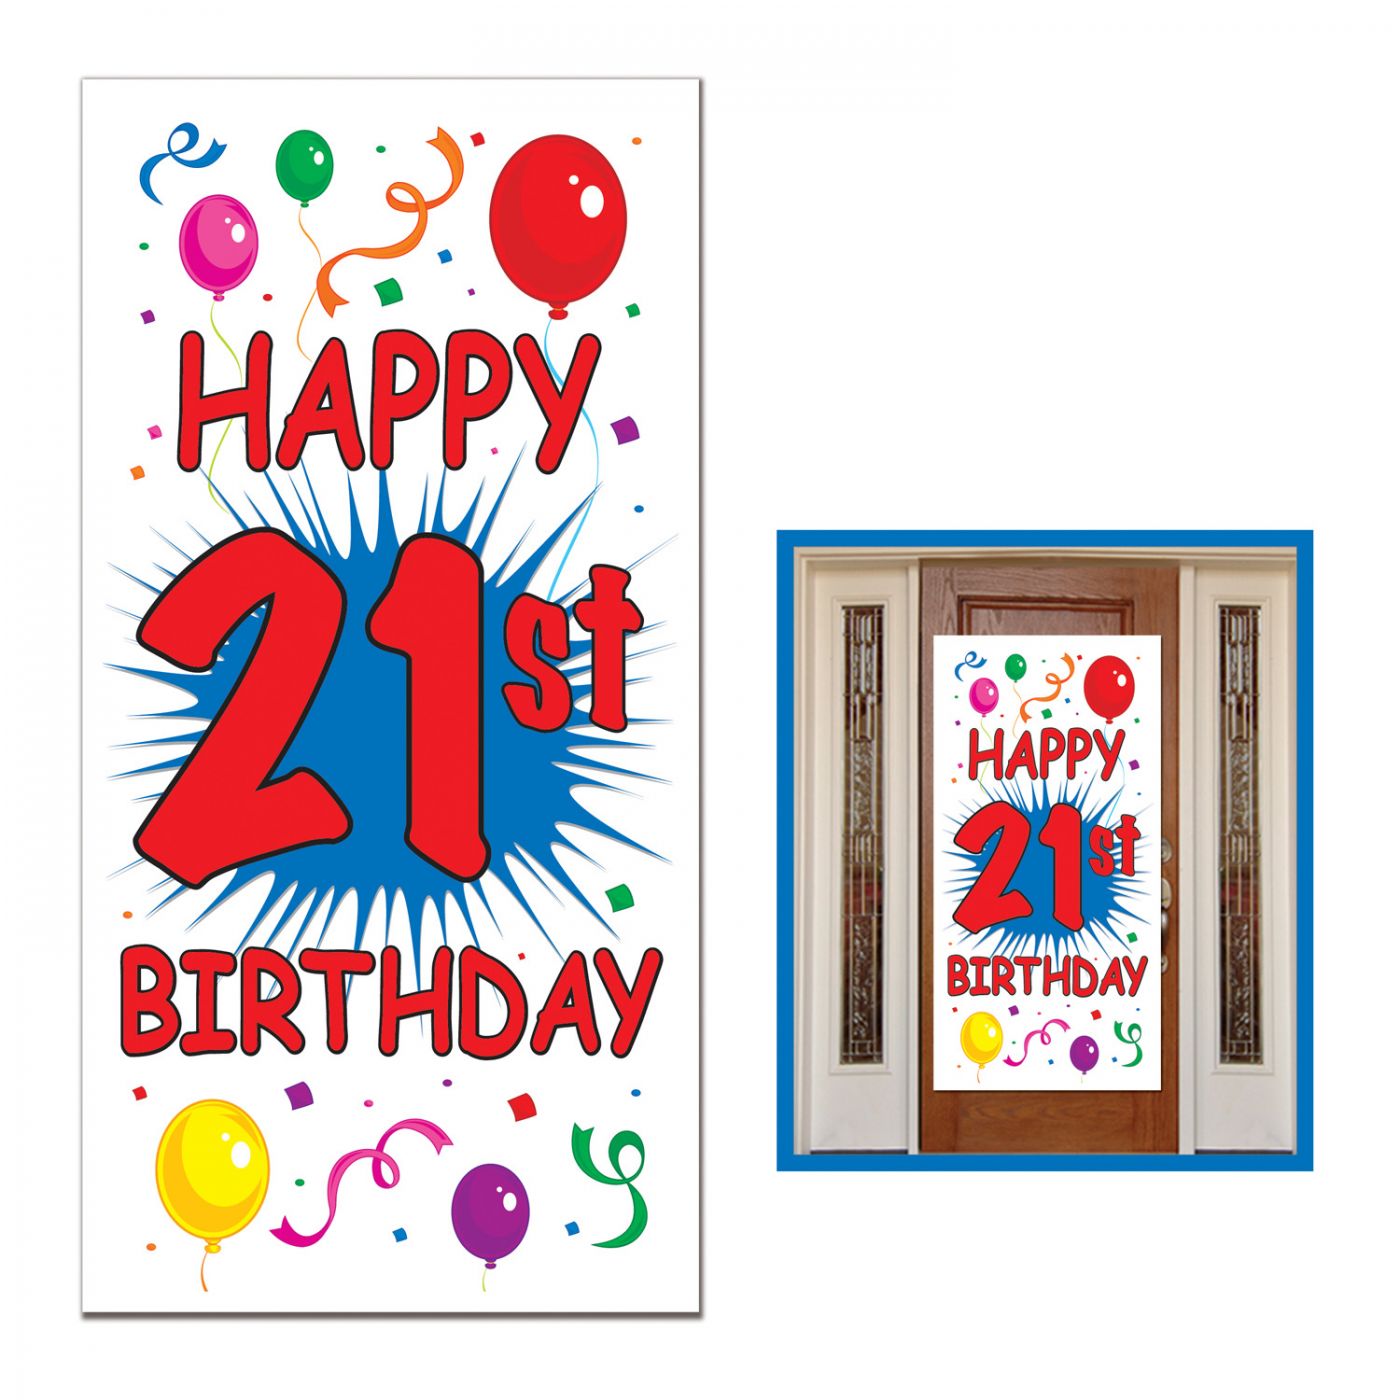 21st Birthday Door Cover image